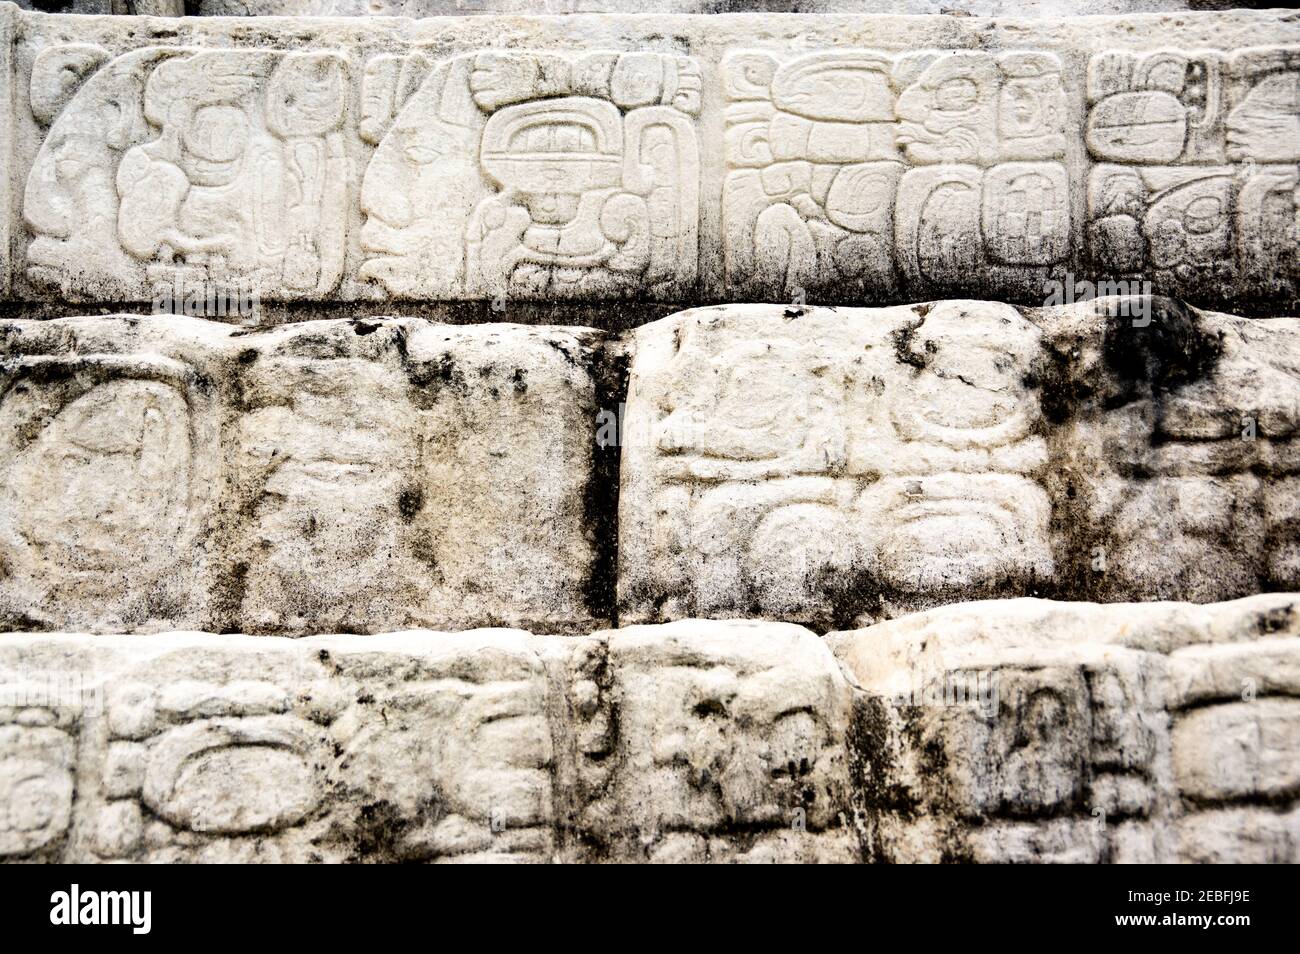 Le rovine maya di Palenque, un sito Patrimonio Mondiale dell'UNESCO, in Chiapas, Messico Foto Stock